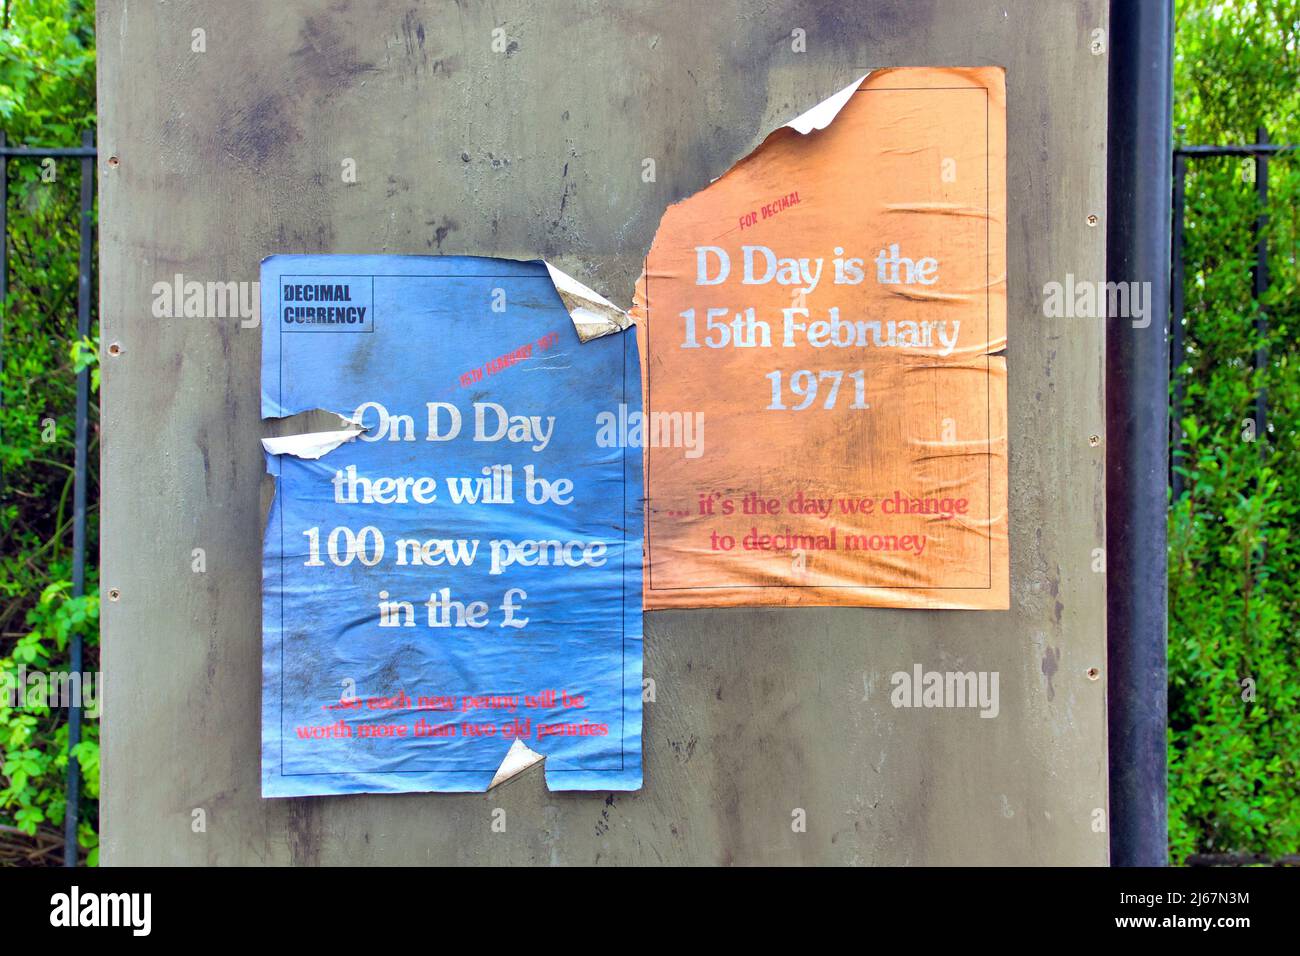 Des affiches de décimation millésimés datant des années 1970 collées sur des meubles de rue lorsque la Grande-Bretagne rejoignant la cee Banque D'Images